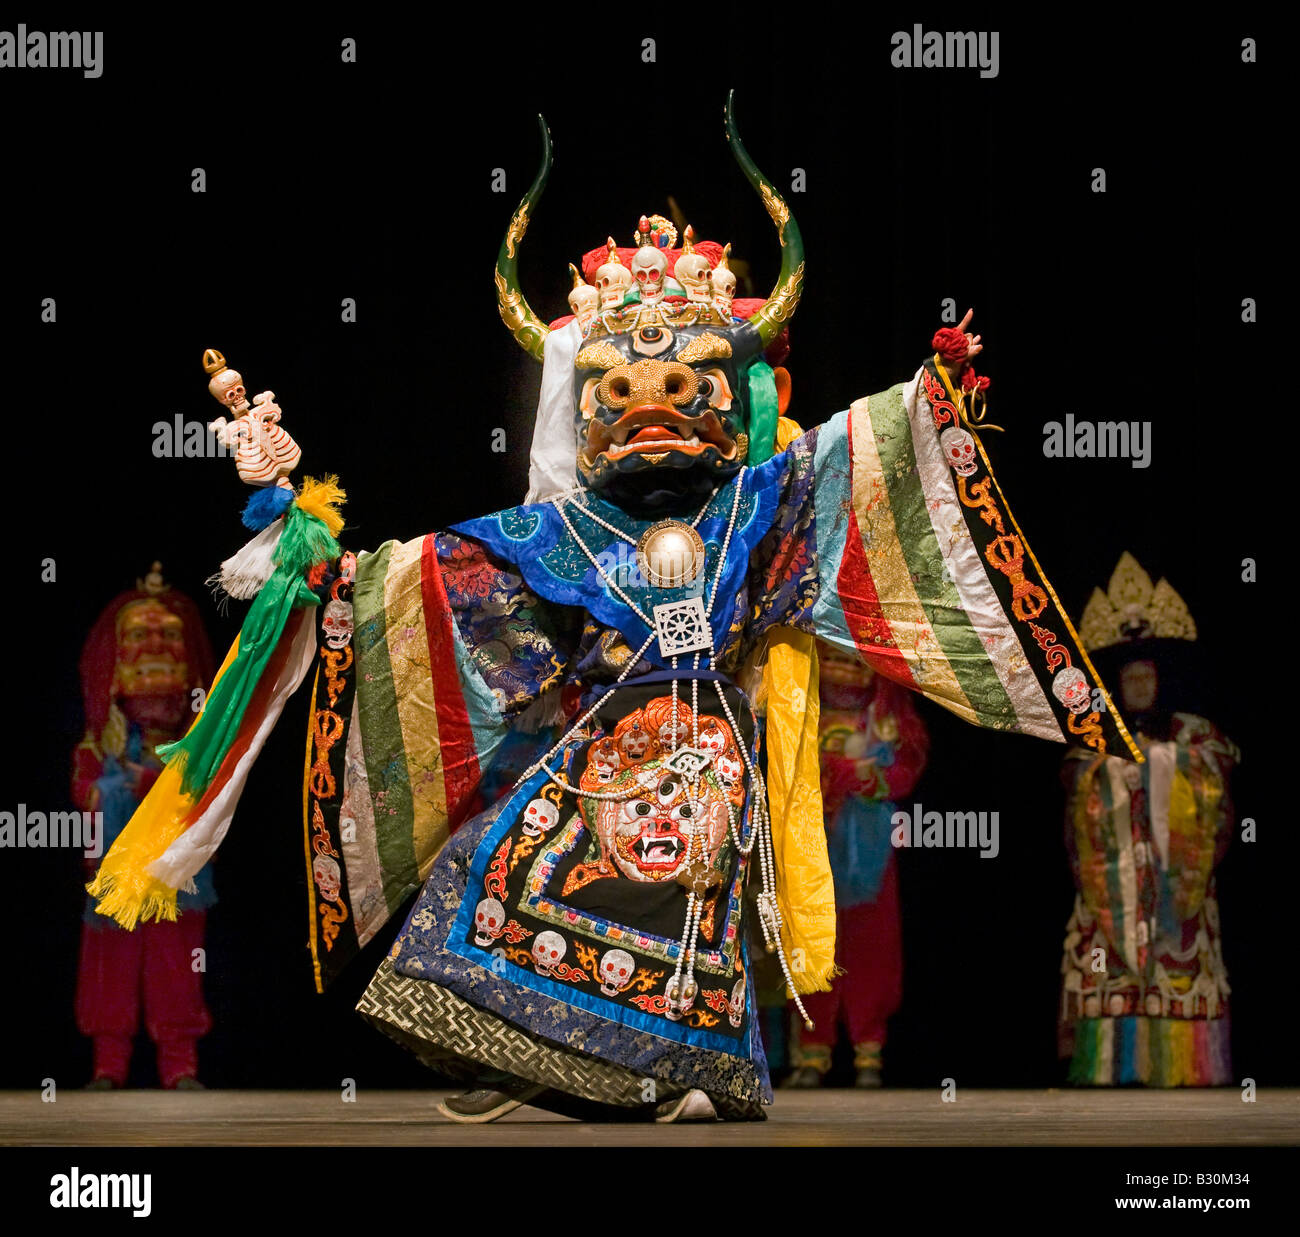 YAK danseuse de l'enseignement du dalaï-lama en 2007 parrainé par le KUMBUM CHAMTSE LING LE CENTRE CULTUREL TIBÉTAIN Bloomington Indiana Banque D'Images